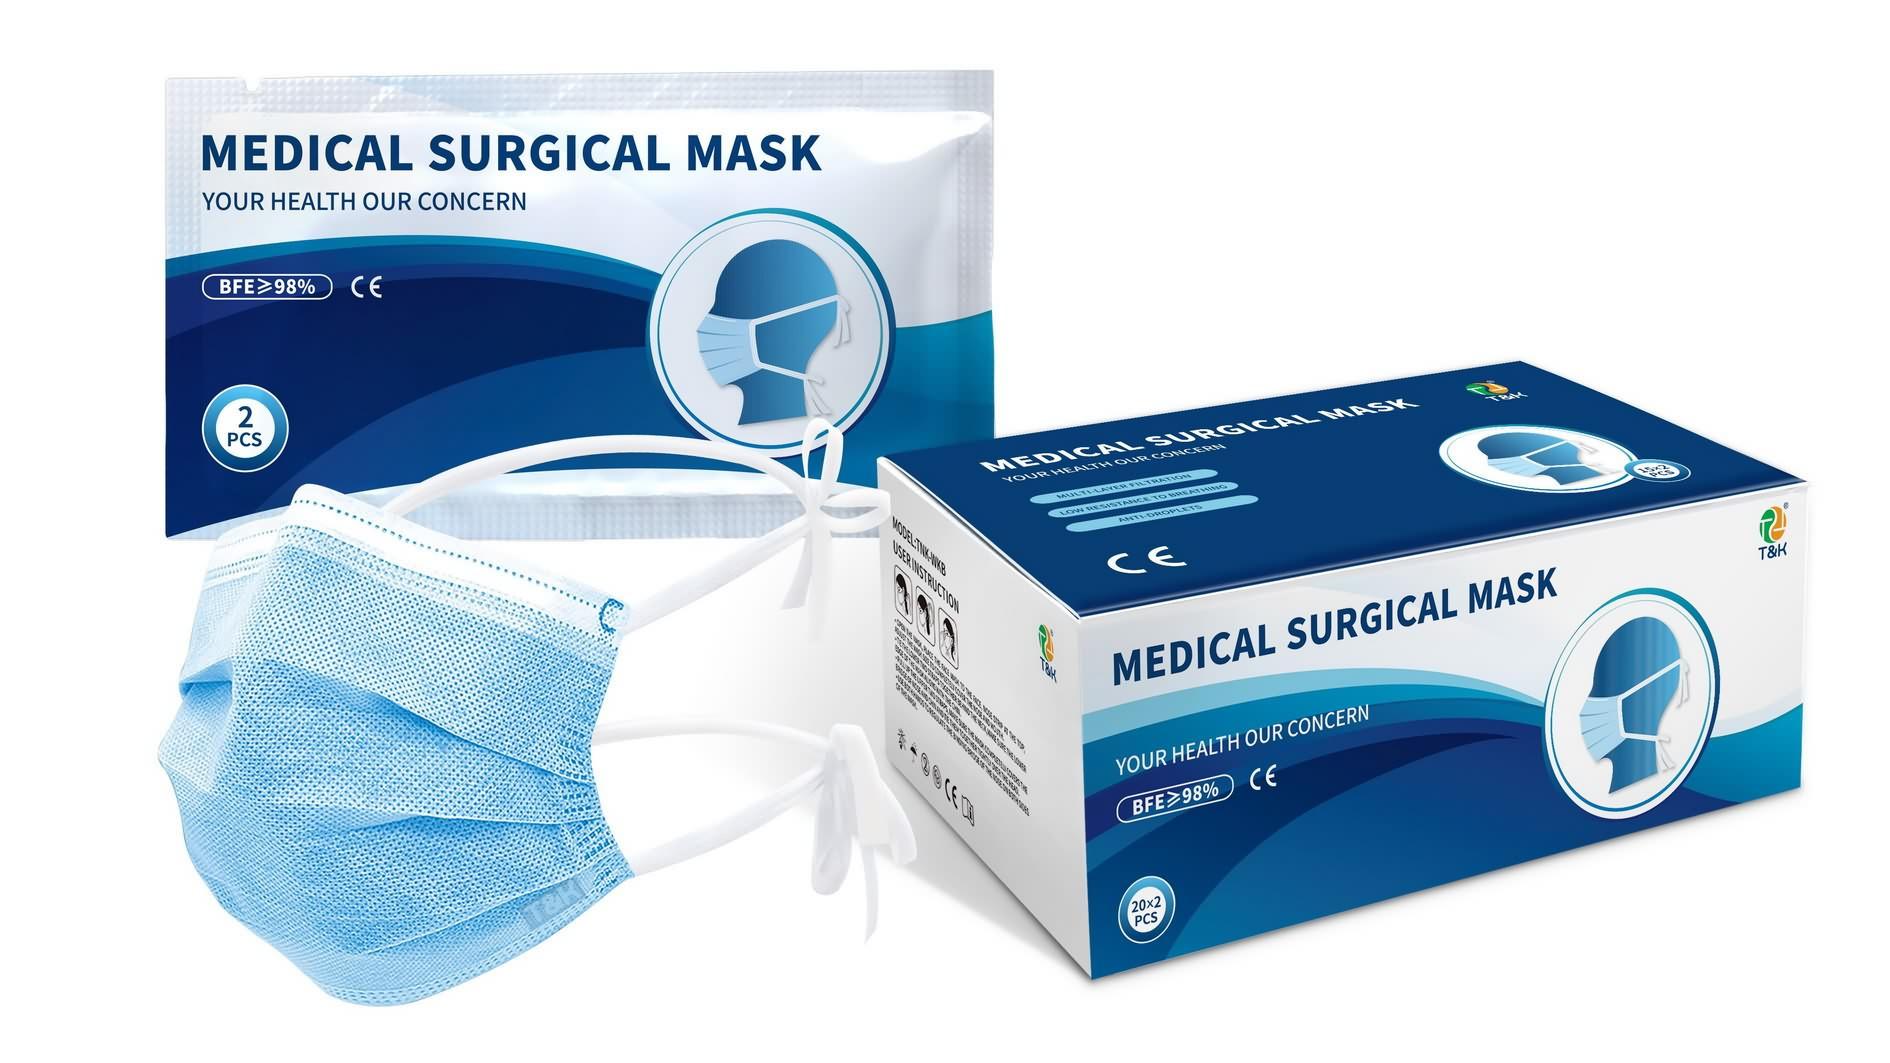 Un masque chirurgical est-il un masque médical ? Qu'est-ce qu'un masque chirurgical médical ? - célèbre prix du masque chirurgical médical